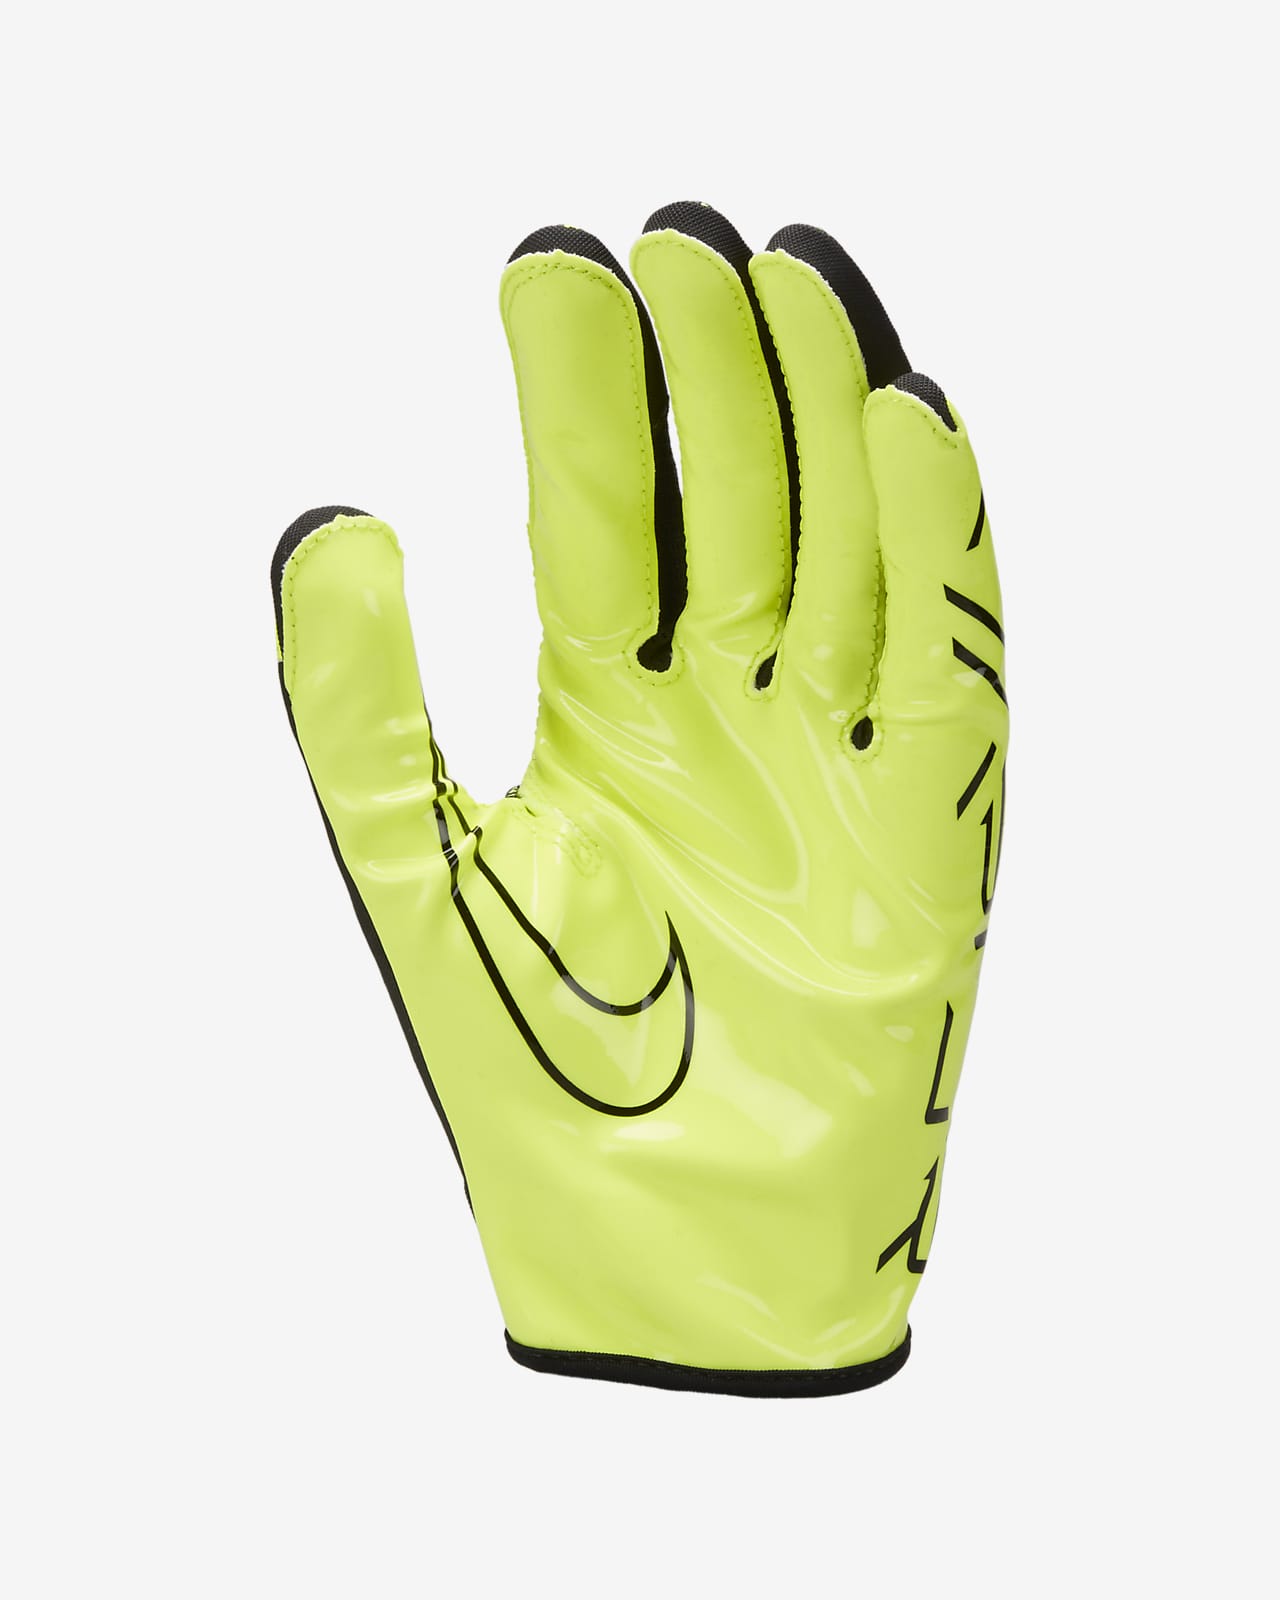 Nike Vapor Jet Energy Football Gloves.